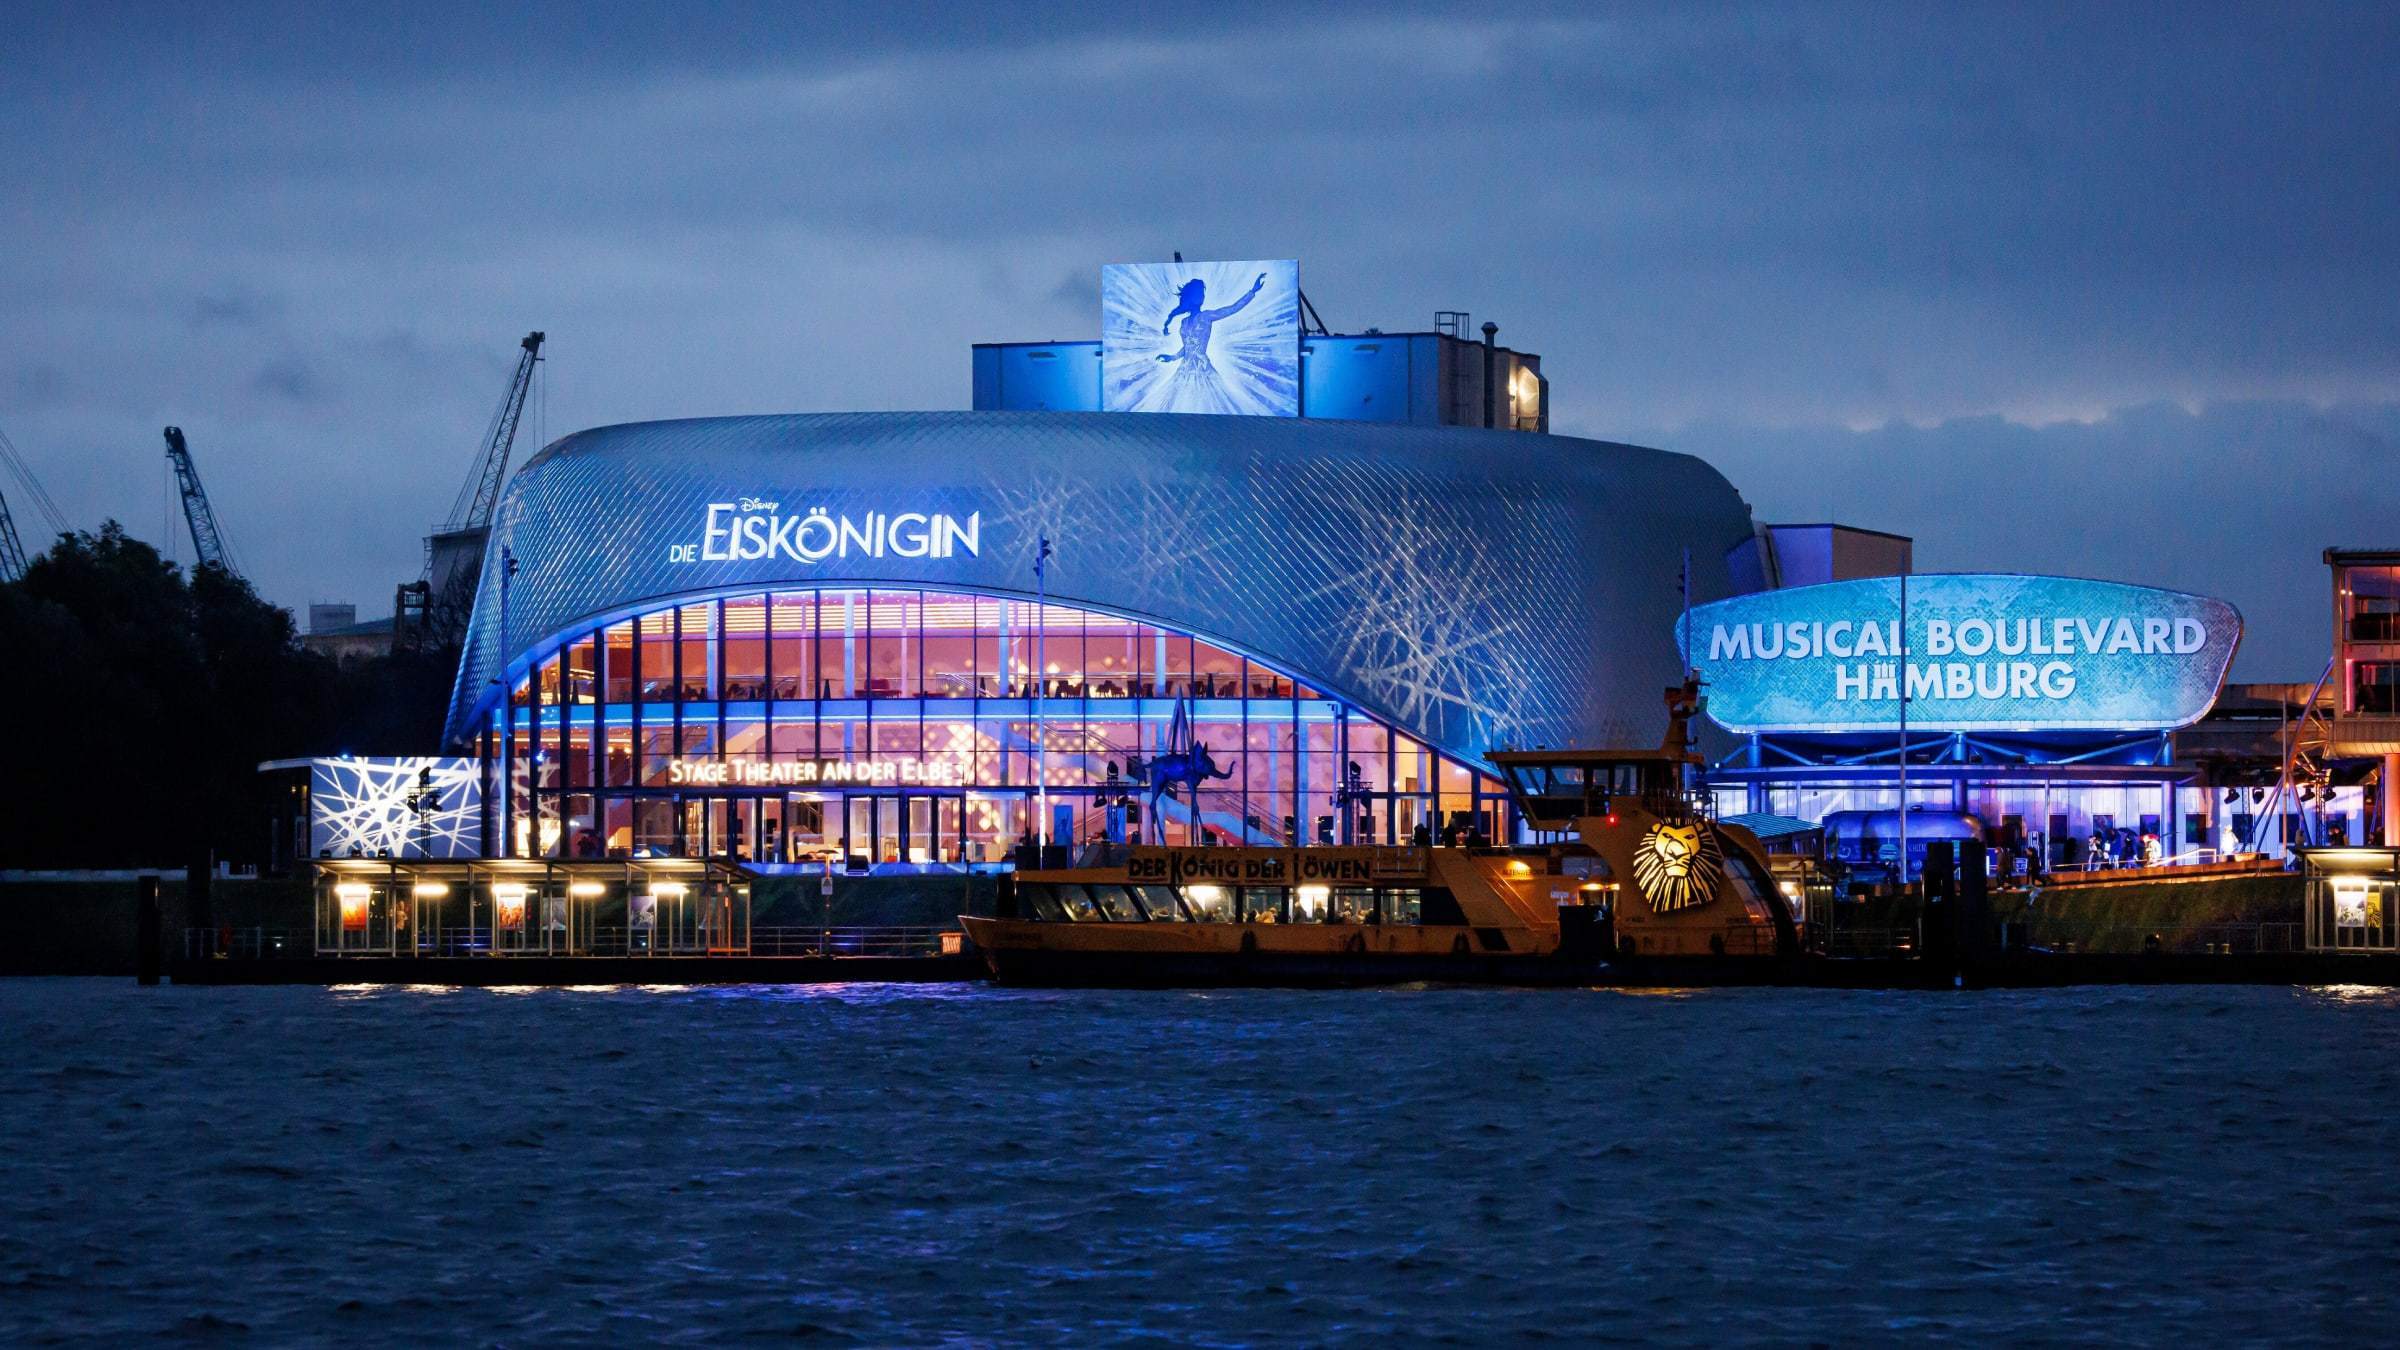 Das Stage Theater an der Elbe in Hamburg mit dem Schriftzug "Disneys Die Eiskönigin", wie es in der Dämmerung in blaues Licht getaucht wird.